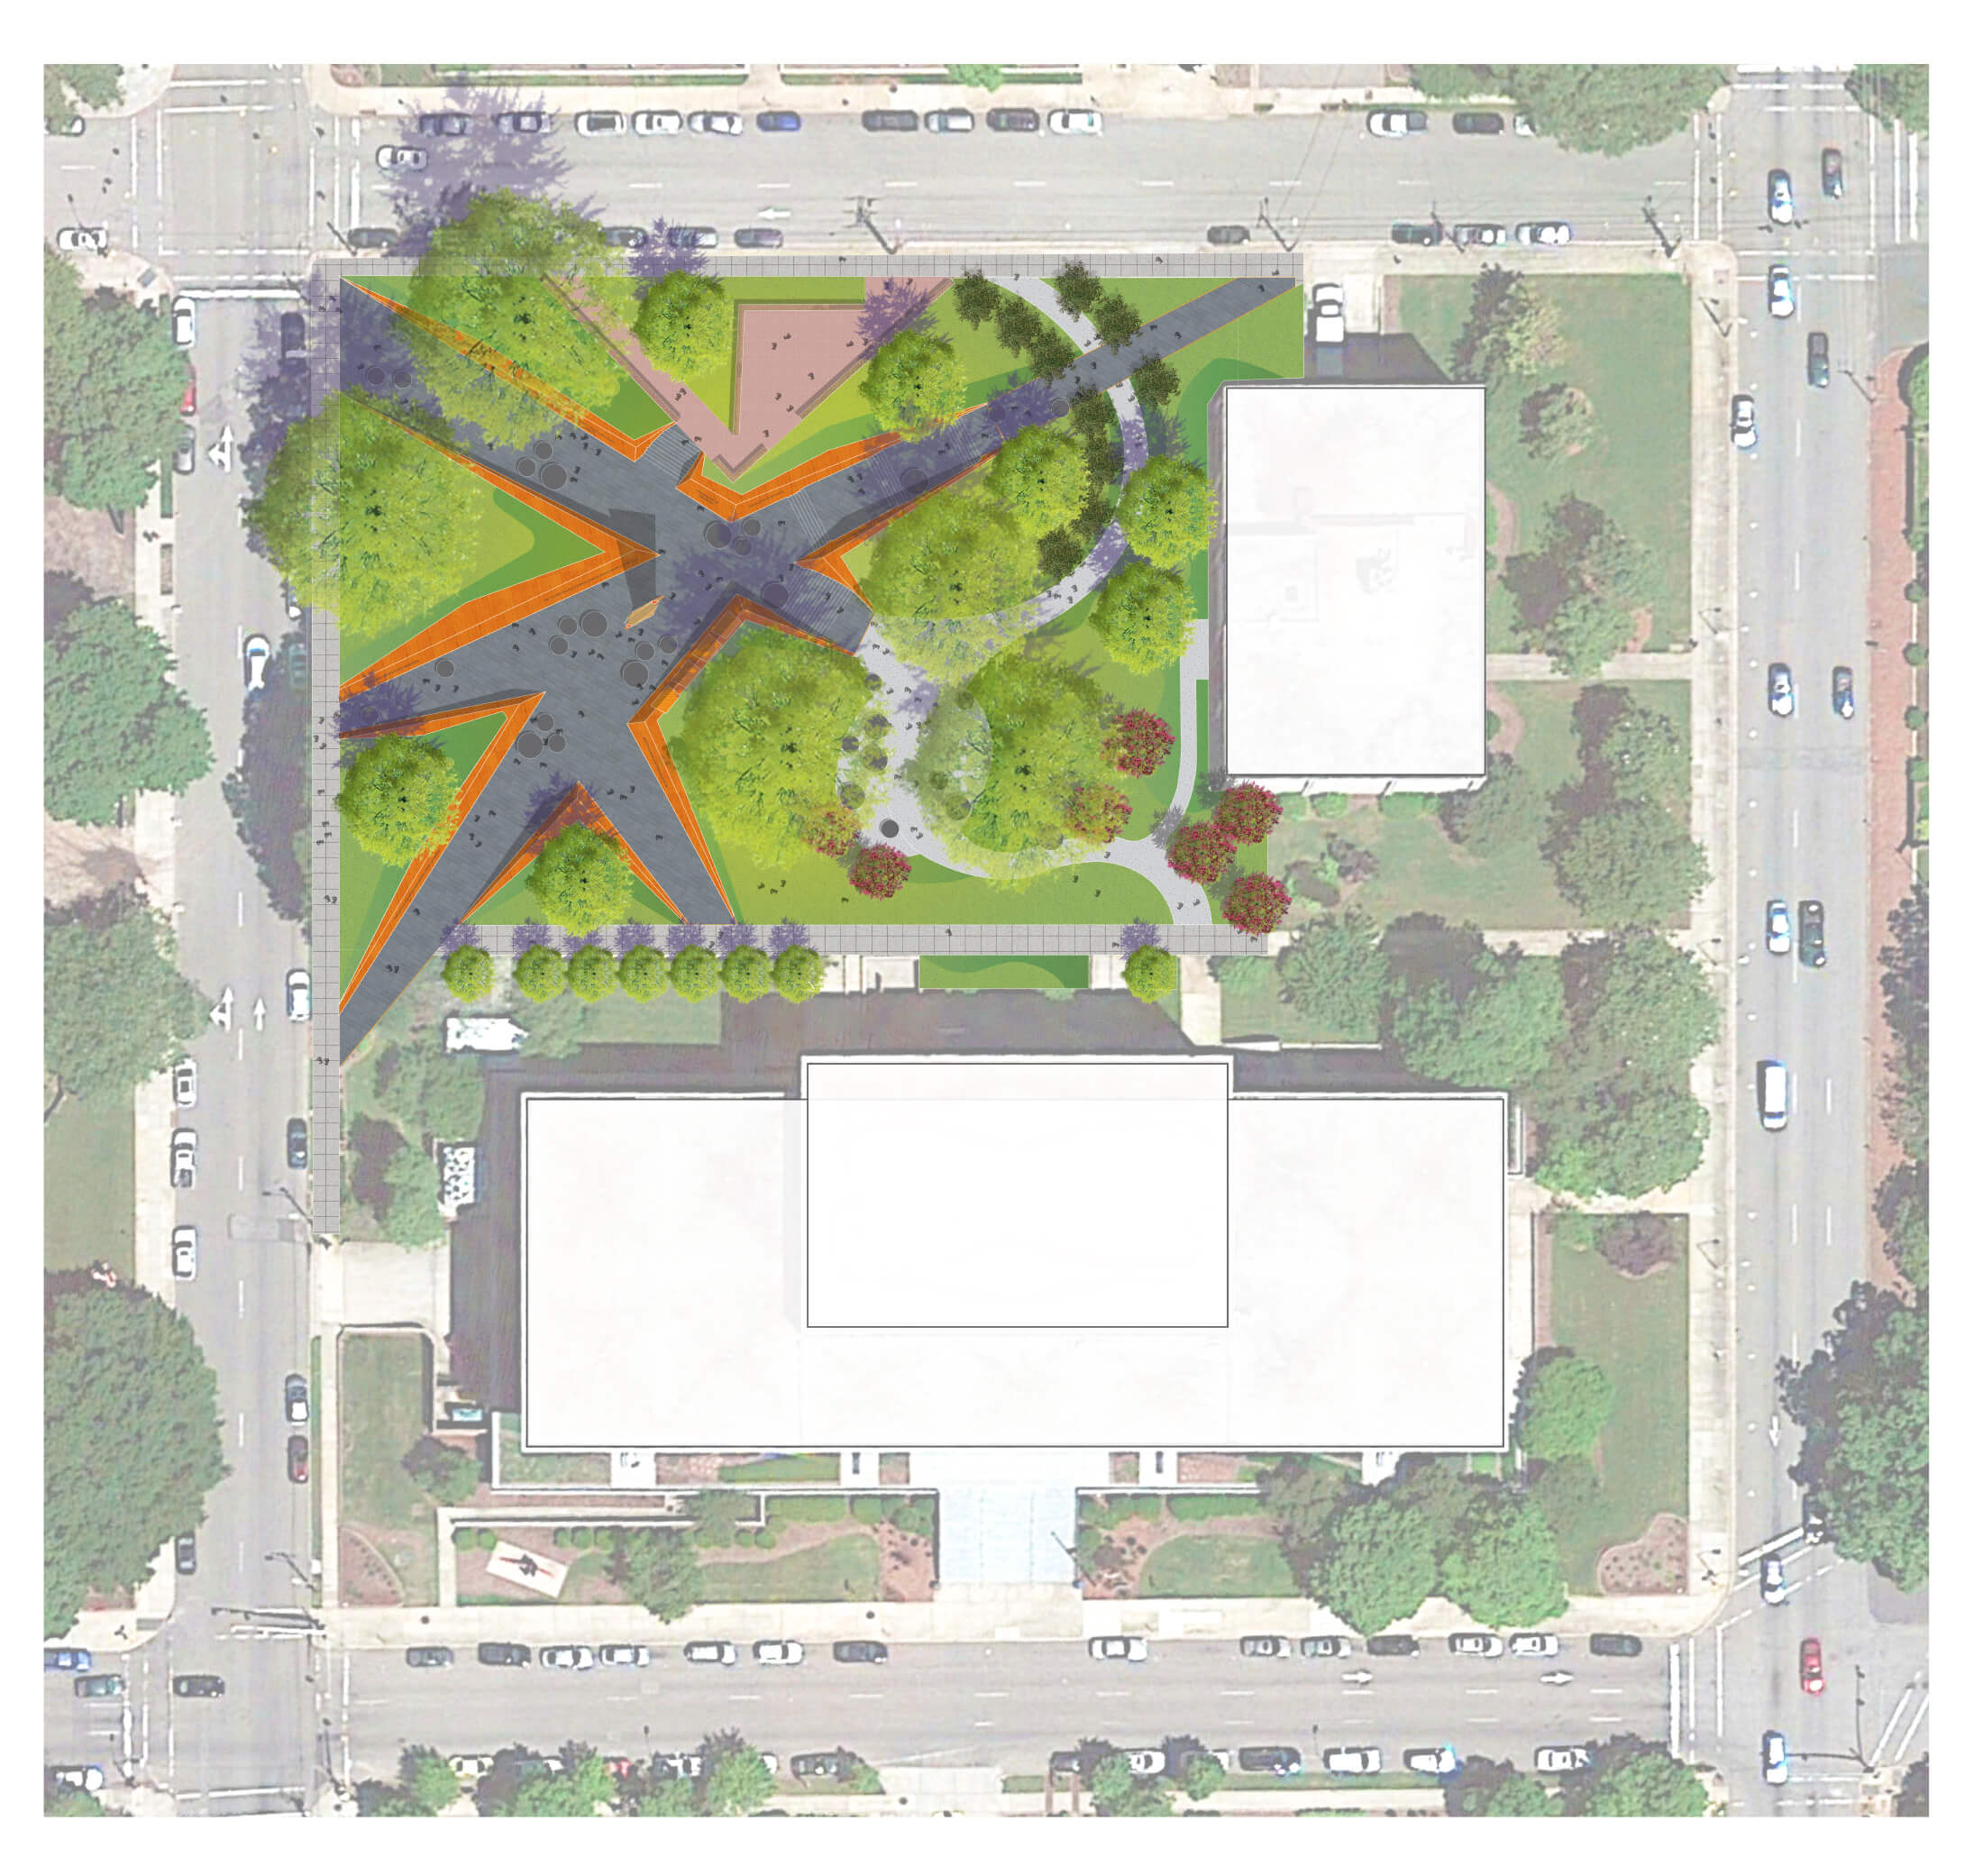 Aerial site plan of a public park